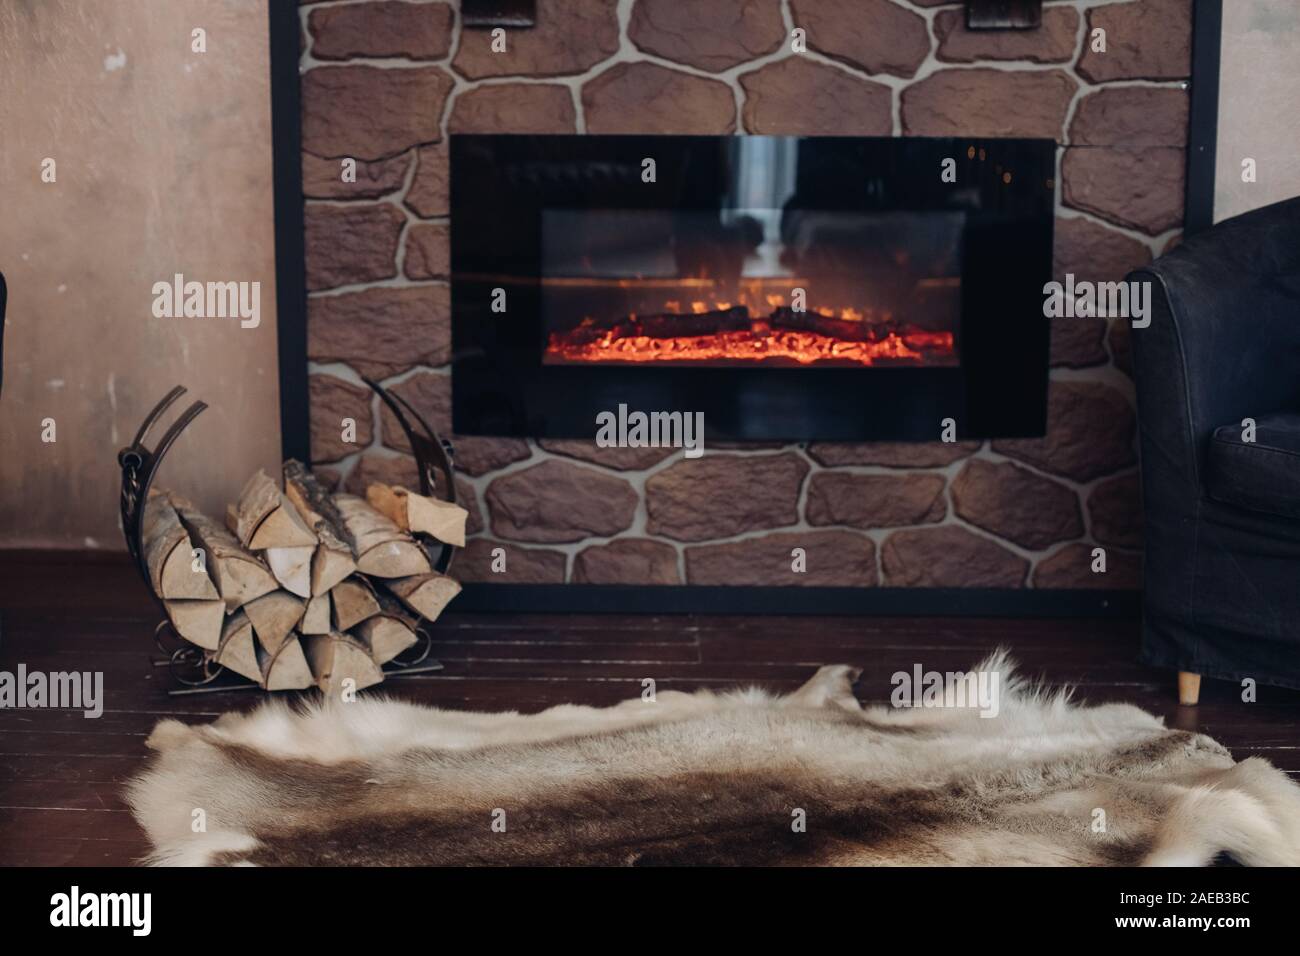 Gemütliche Zimmer mit Kamin, Fell Haut und Stapel von Holz Stockfotografie  - Alamy